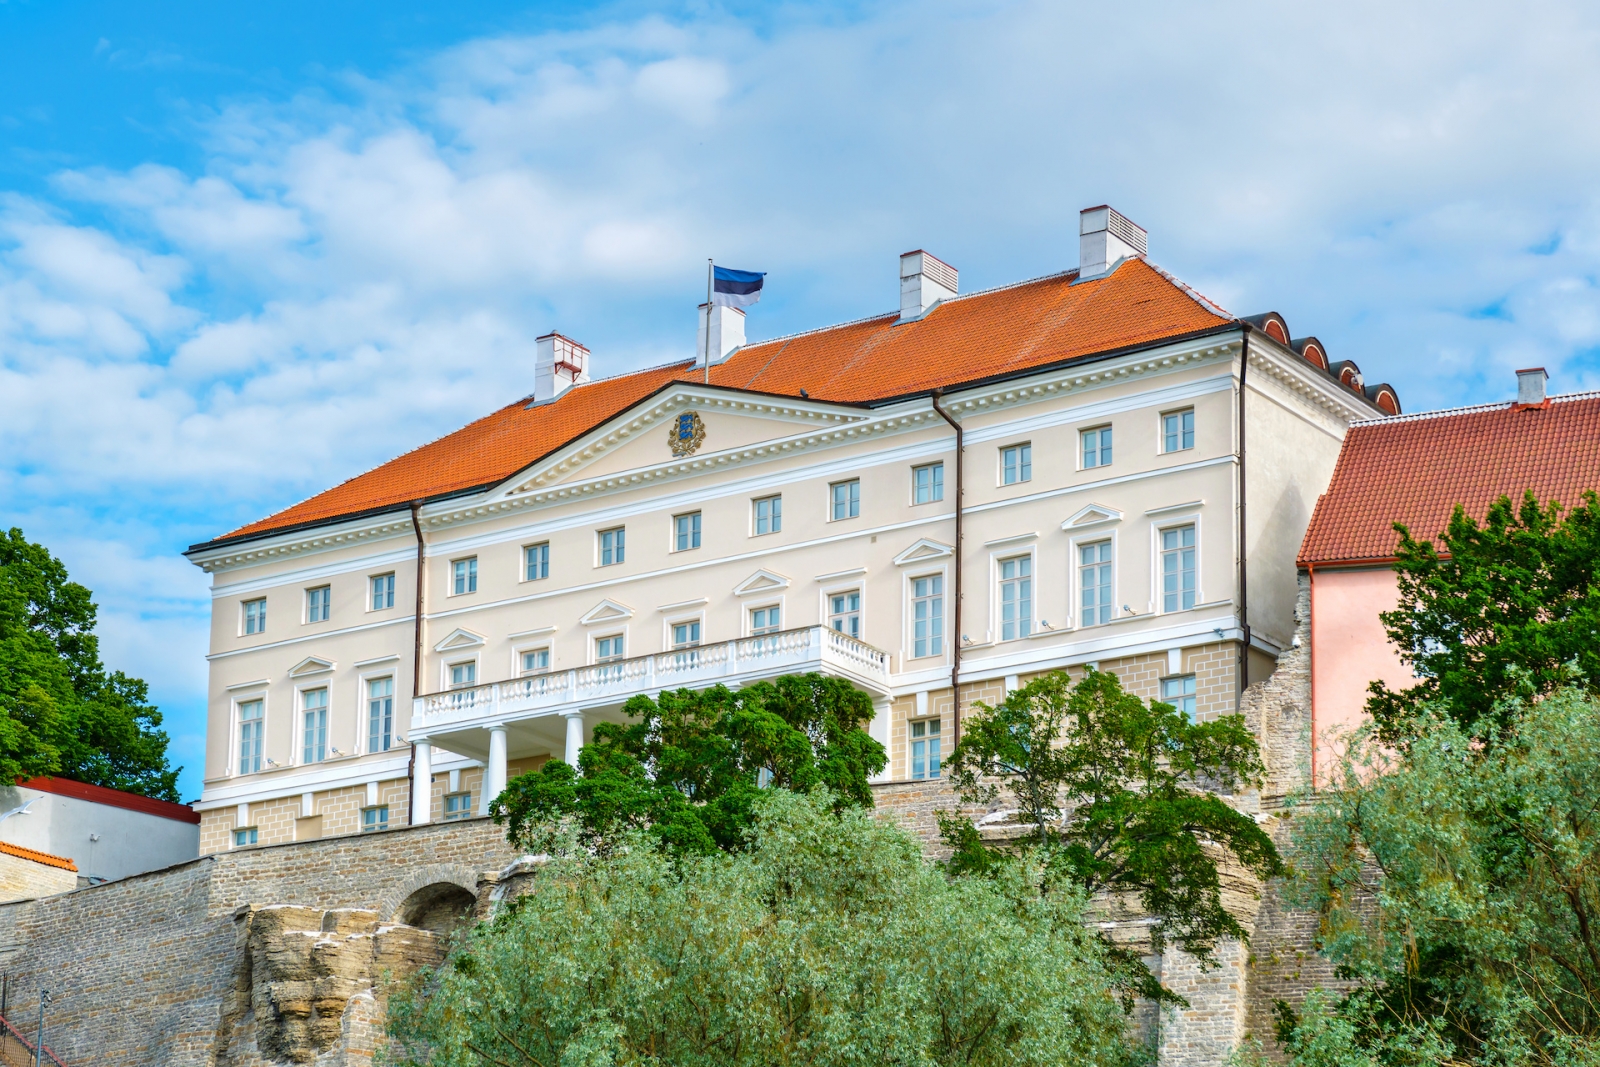 Edificio del governo estone.  Tallinn, Estonia